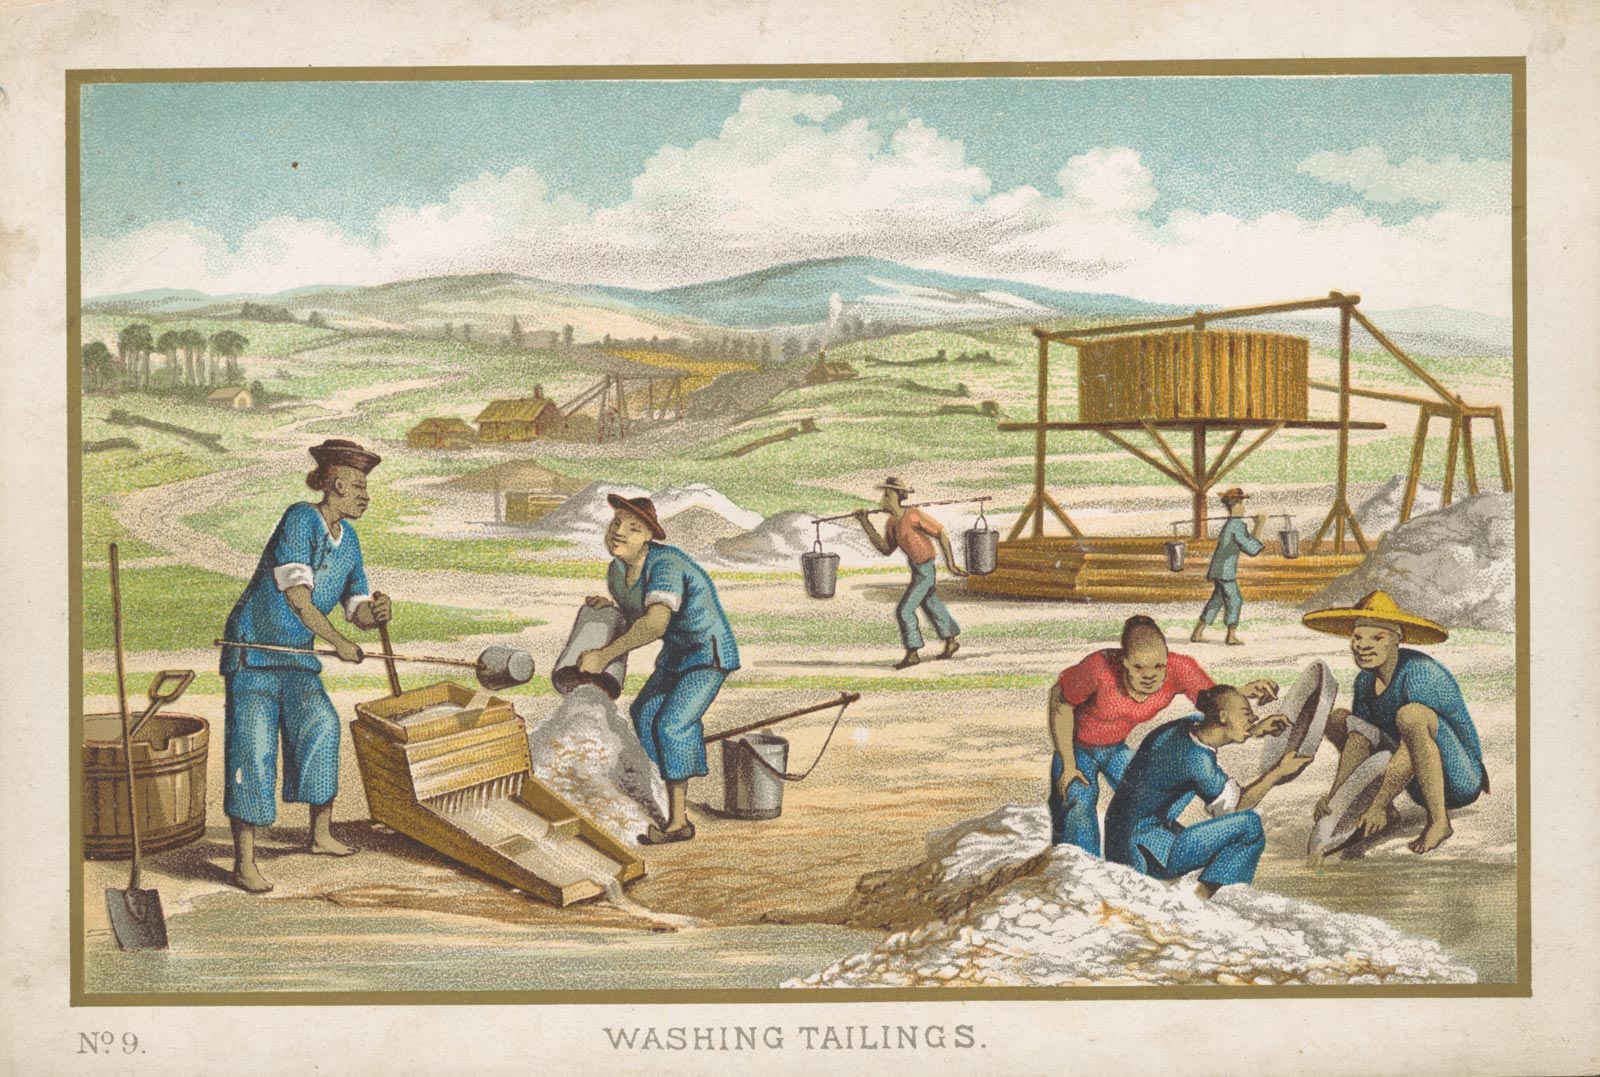 Washing Tailings, 1870s.